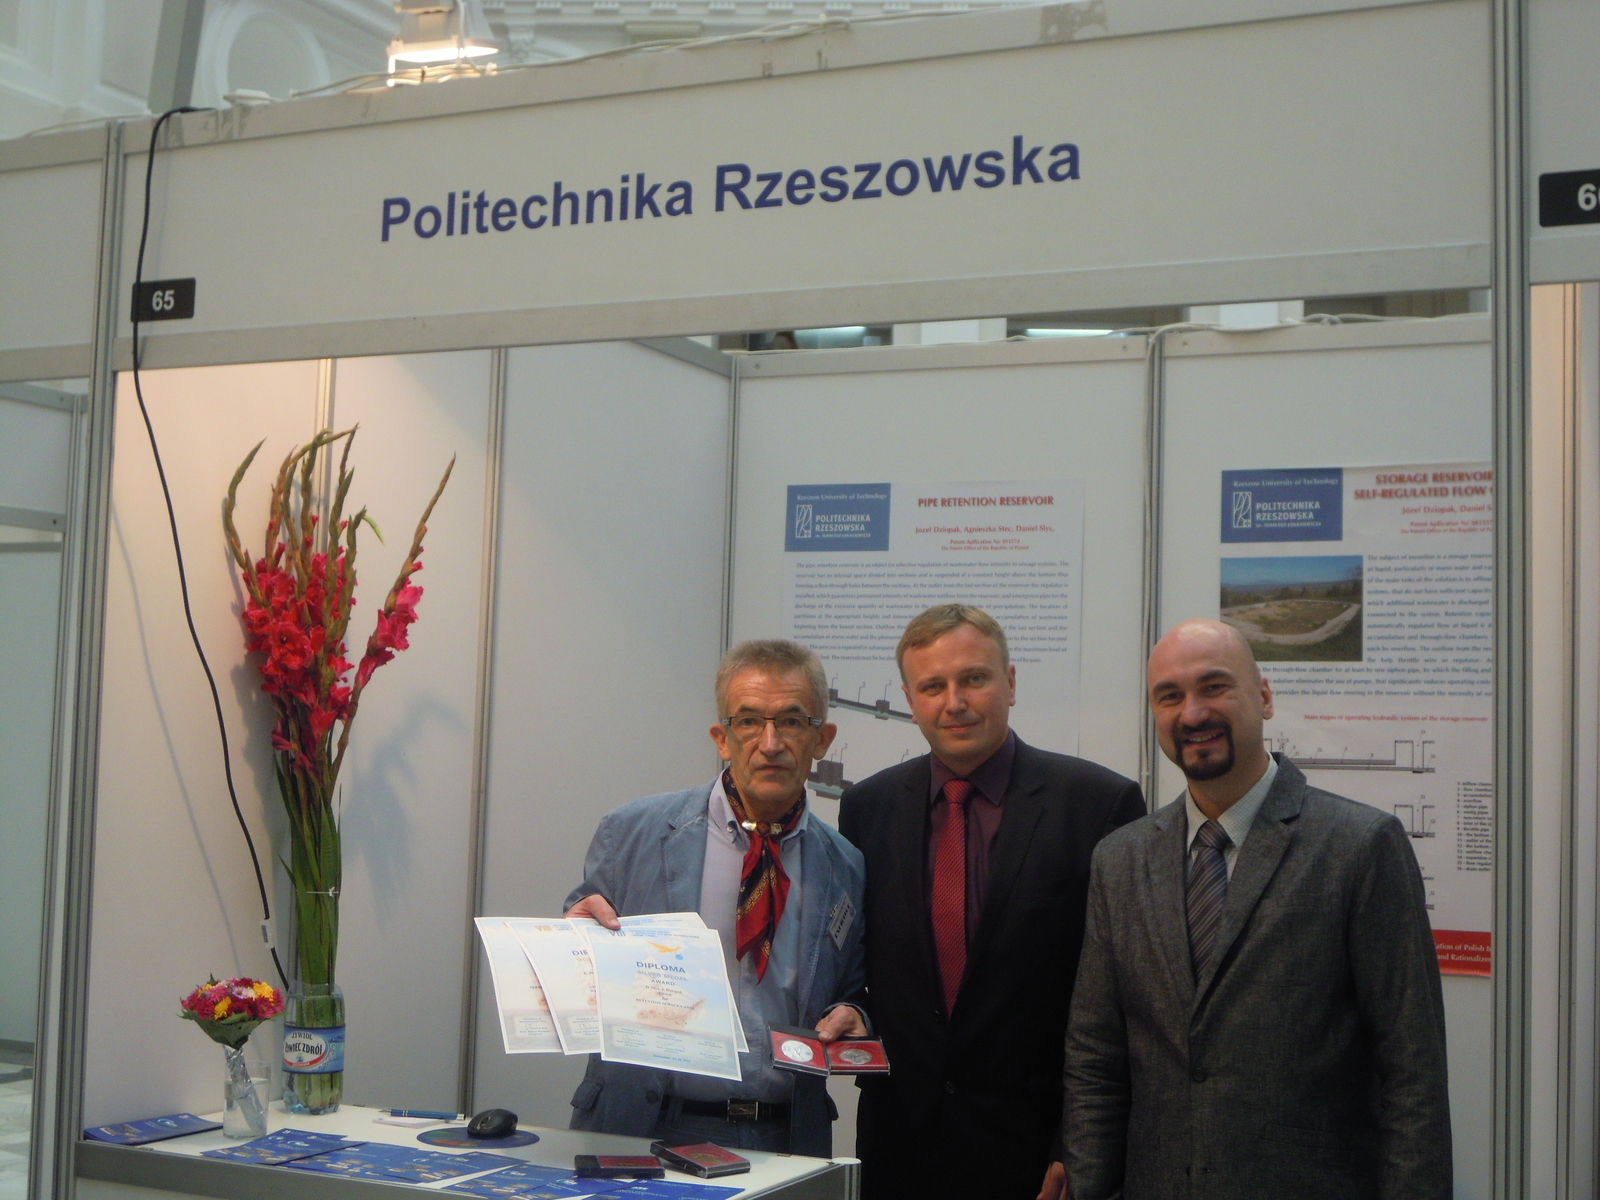 Profesor Dziopak nagrodzony dyplomami i medalami przez profesora Wasilija P. Gocza oraz profesora Pierre Fumiėre przy wystawie Politechniki Rzeszowskiej.